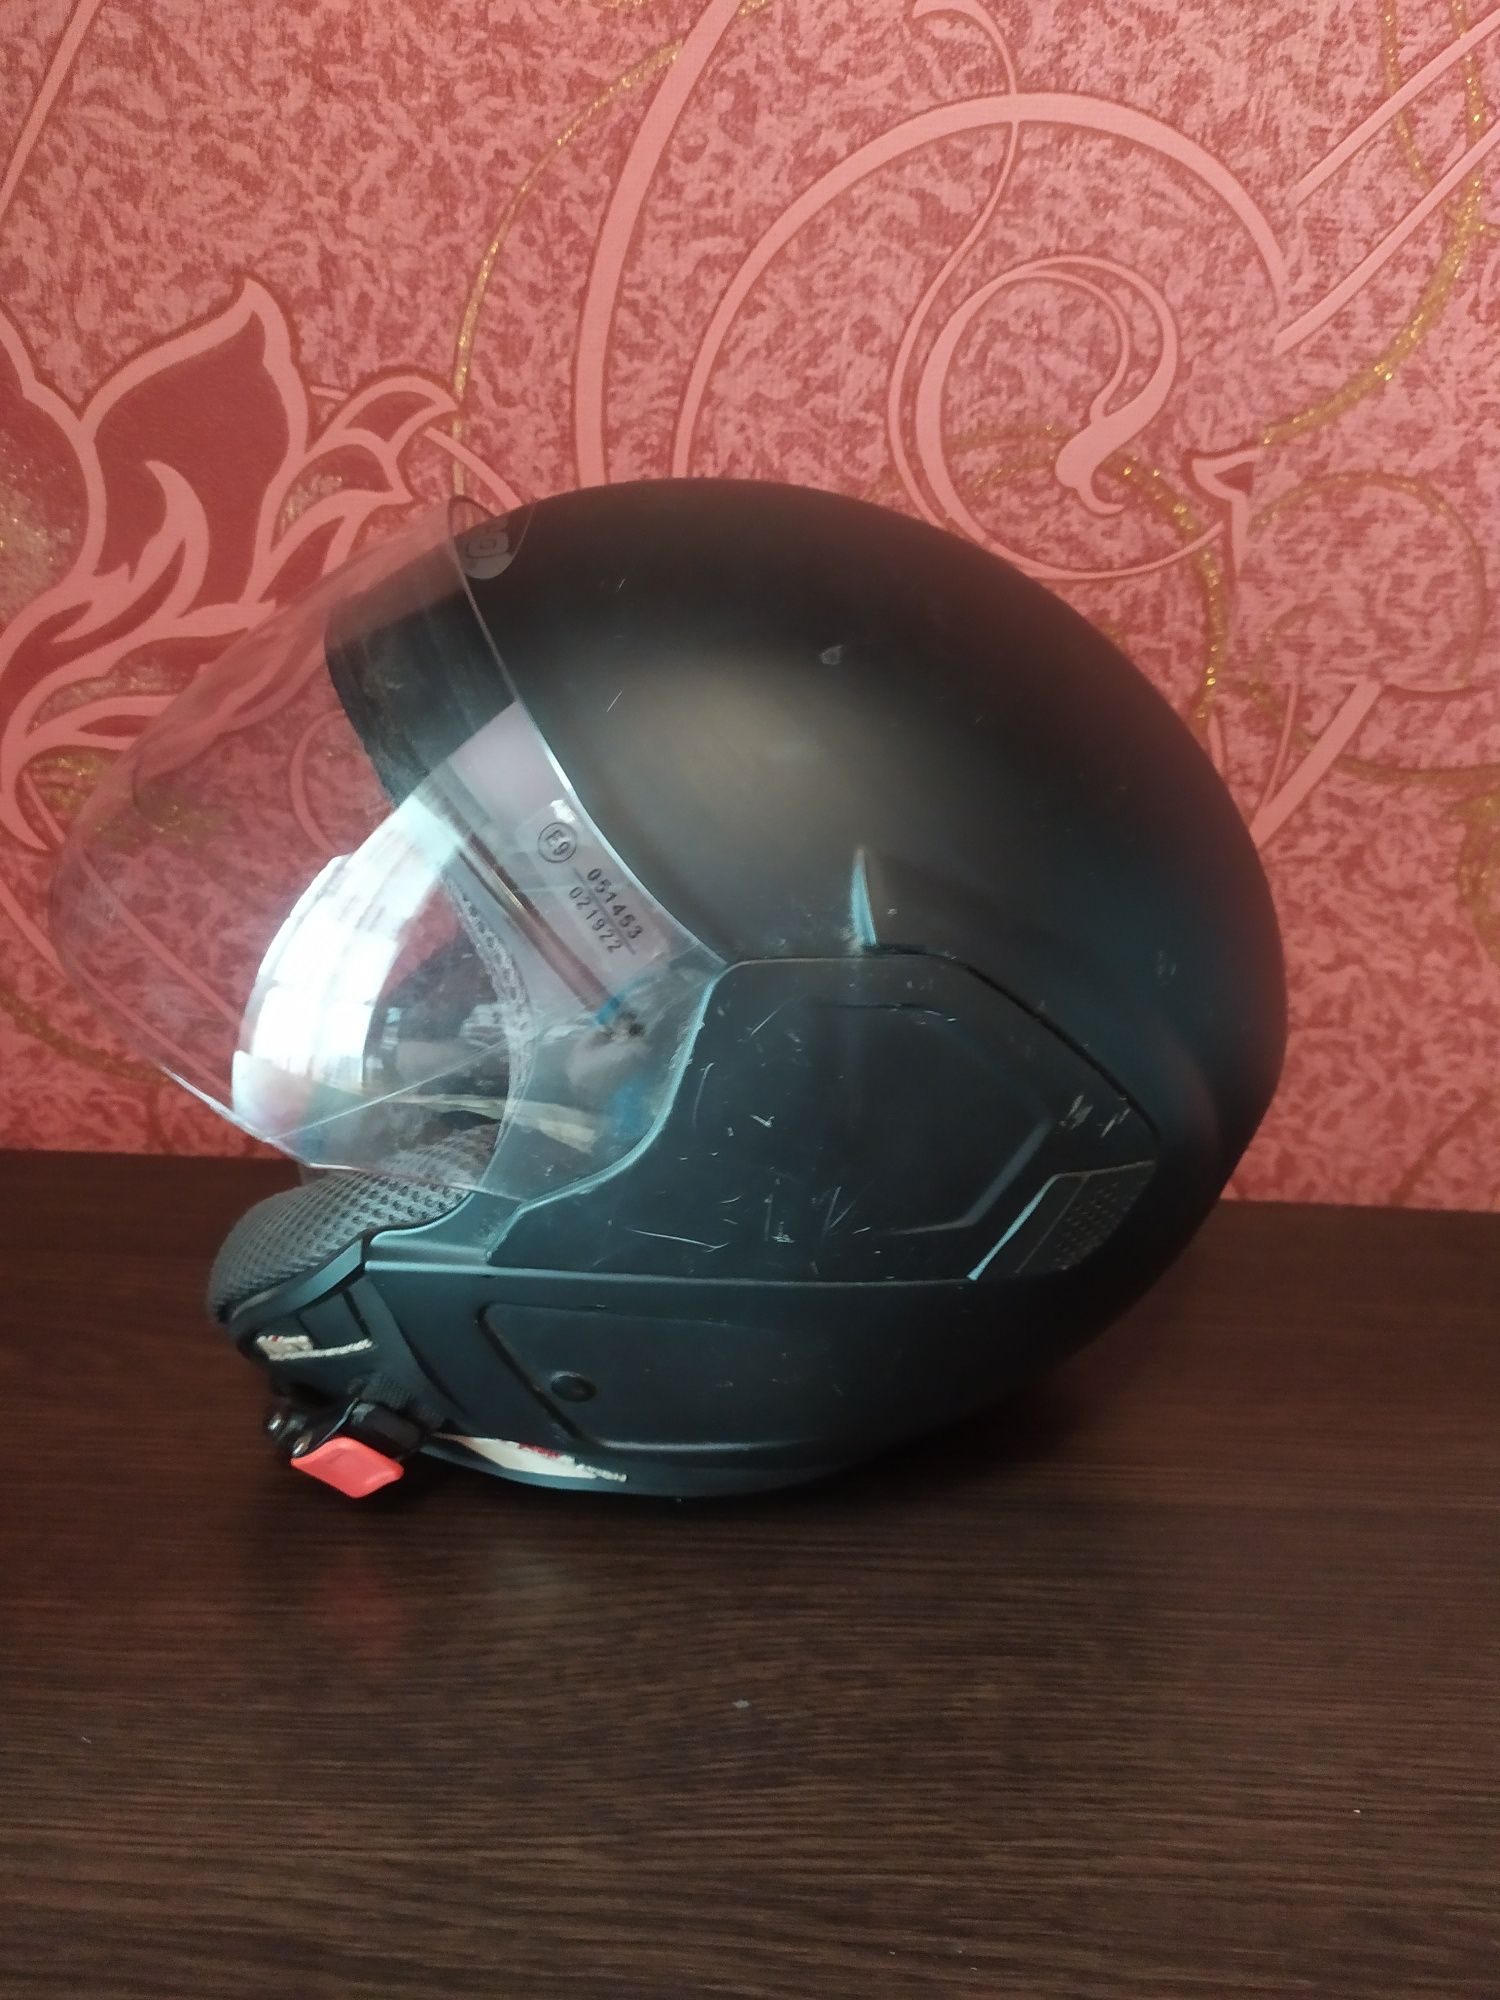 Шлем мотоциклетный